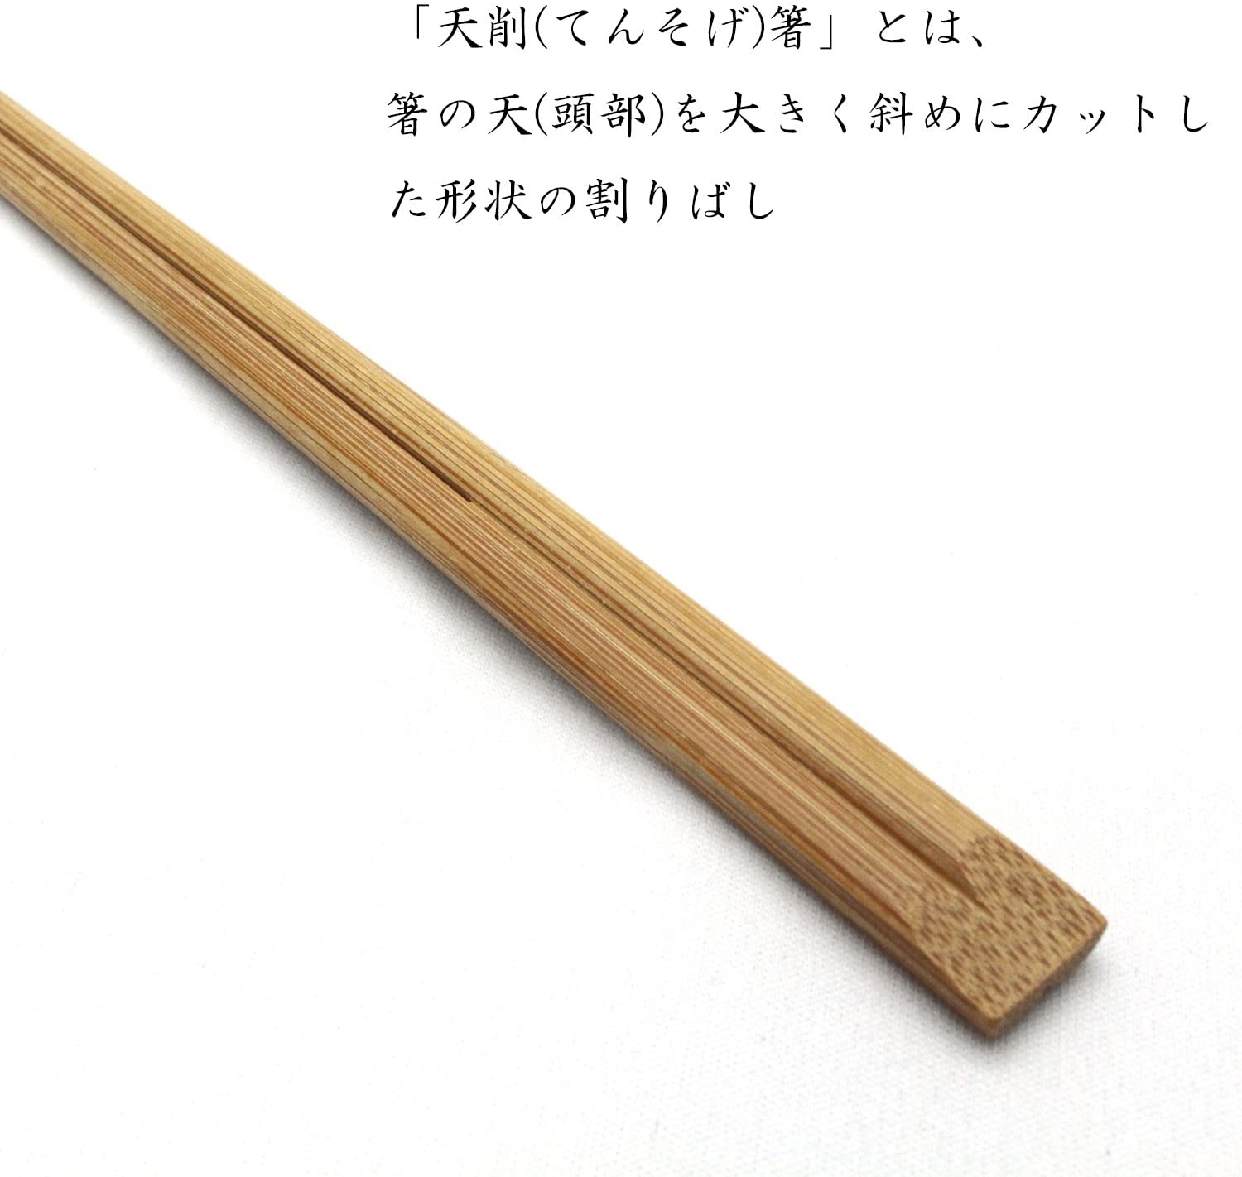 中村 割り箸 すす竹 天削 100膳 24cmの商品画像5 